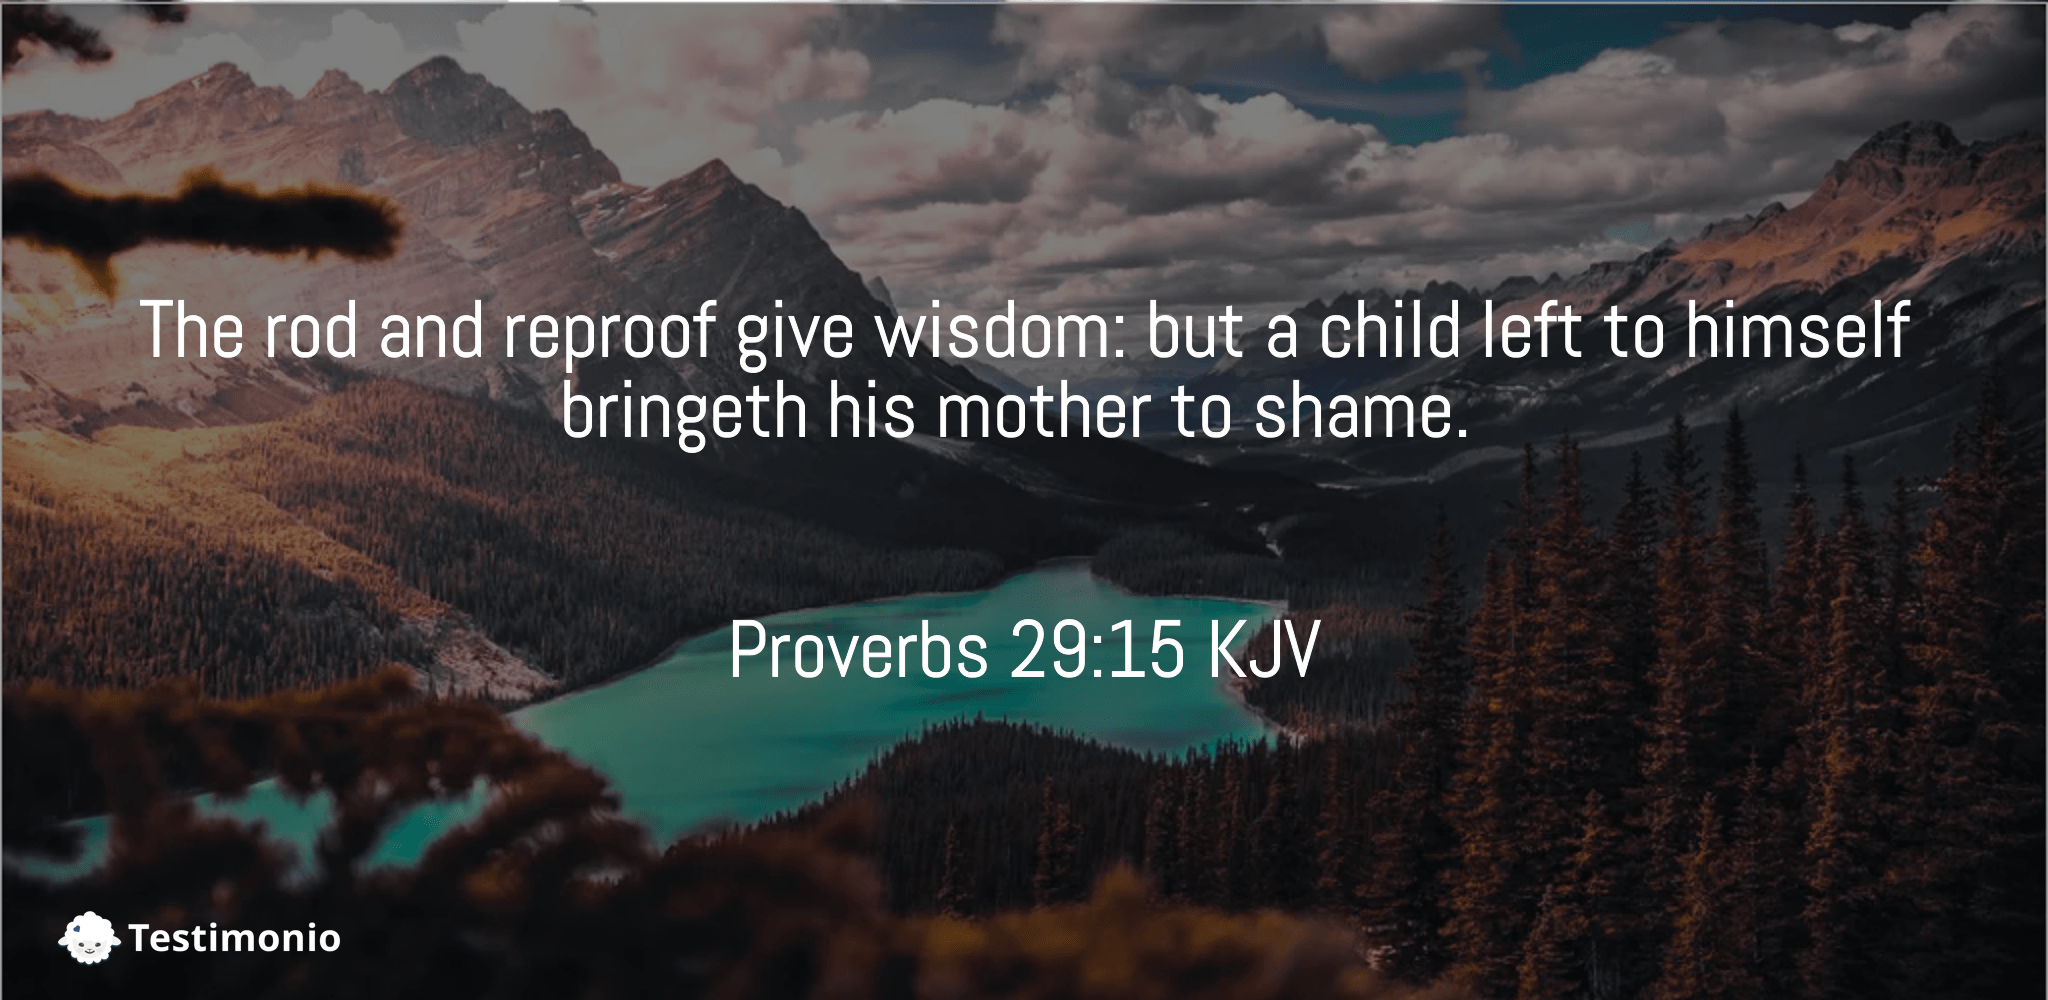 Proverbs 29:15